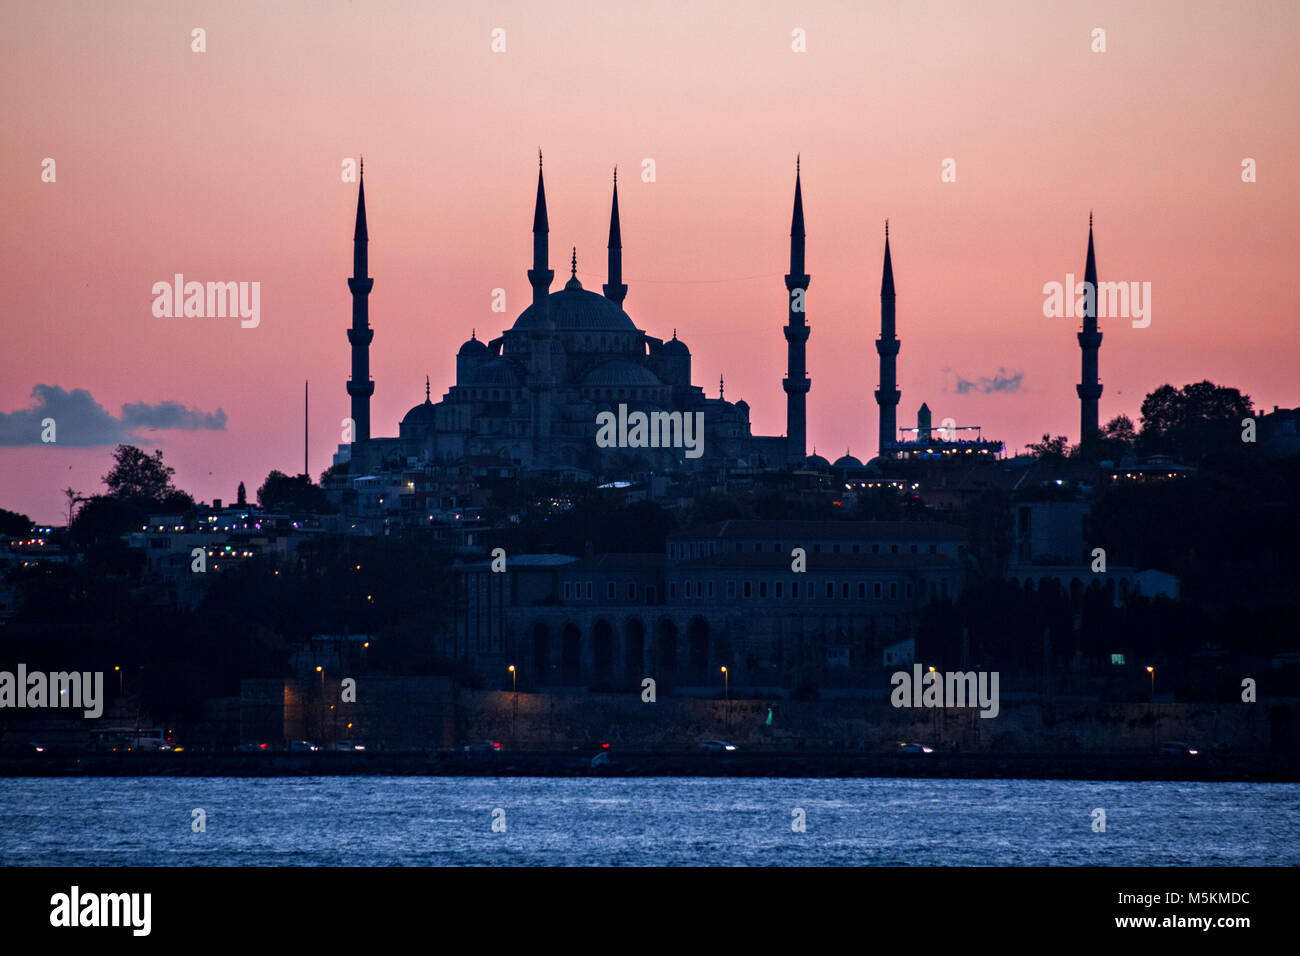 Blaue Moschee in Silhouette, bei Dämmerung, Istanbul, Türkei. Stockfoto